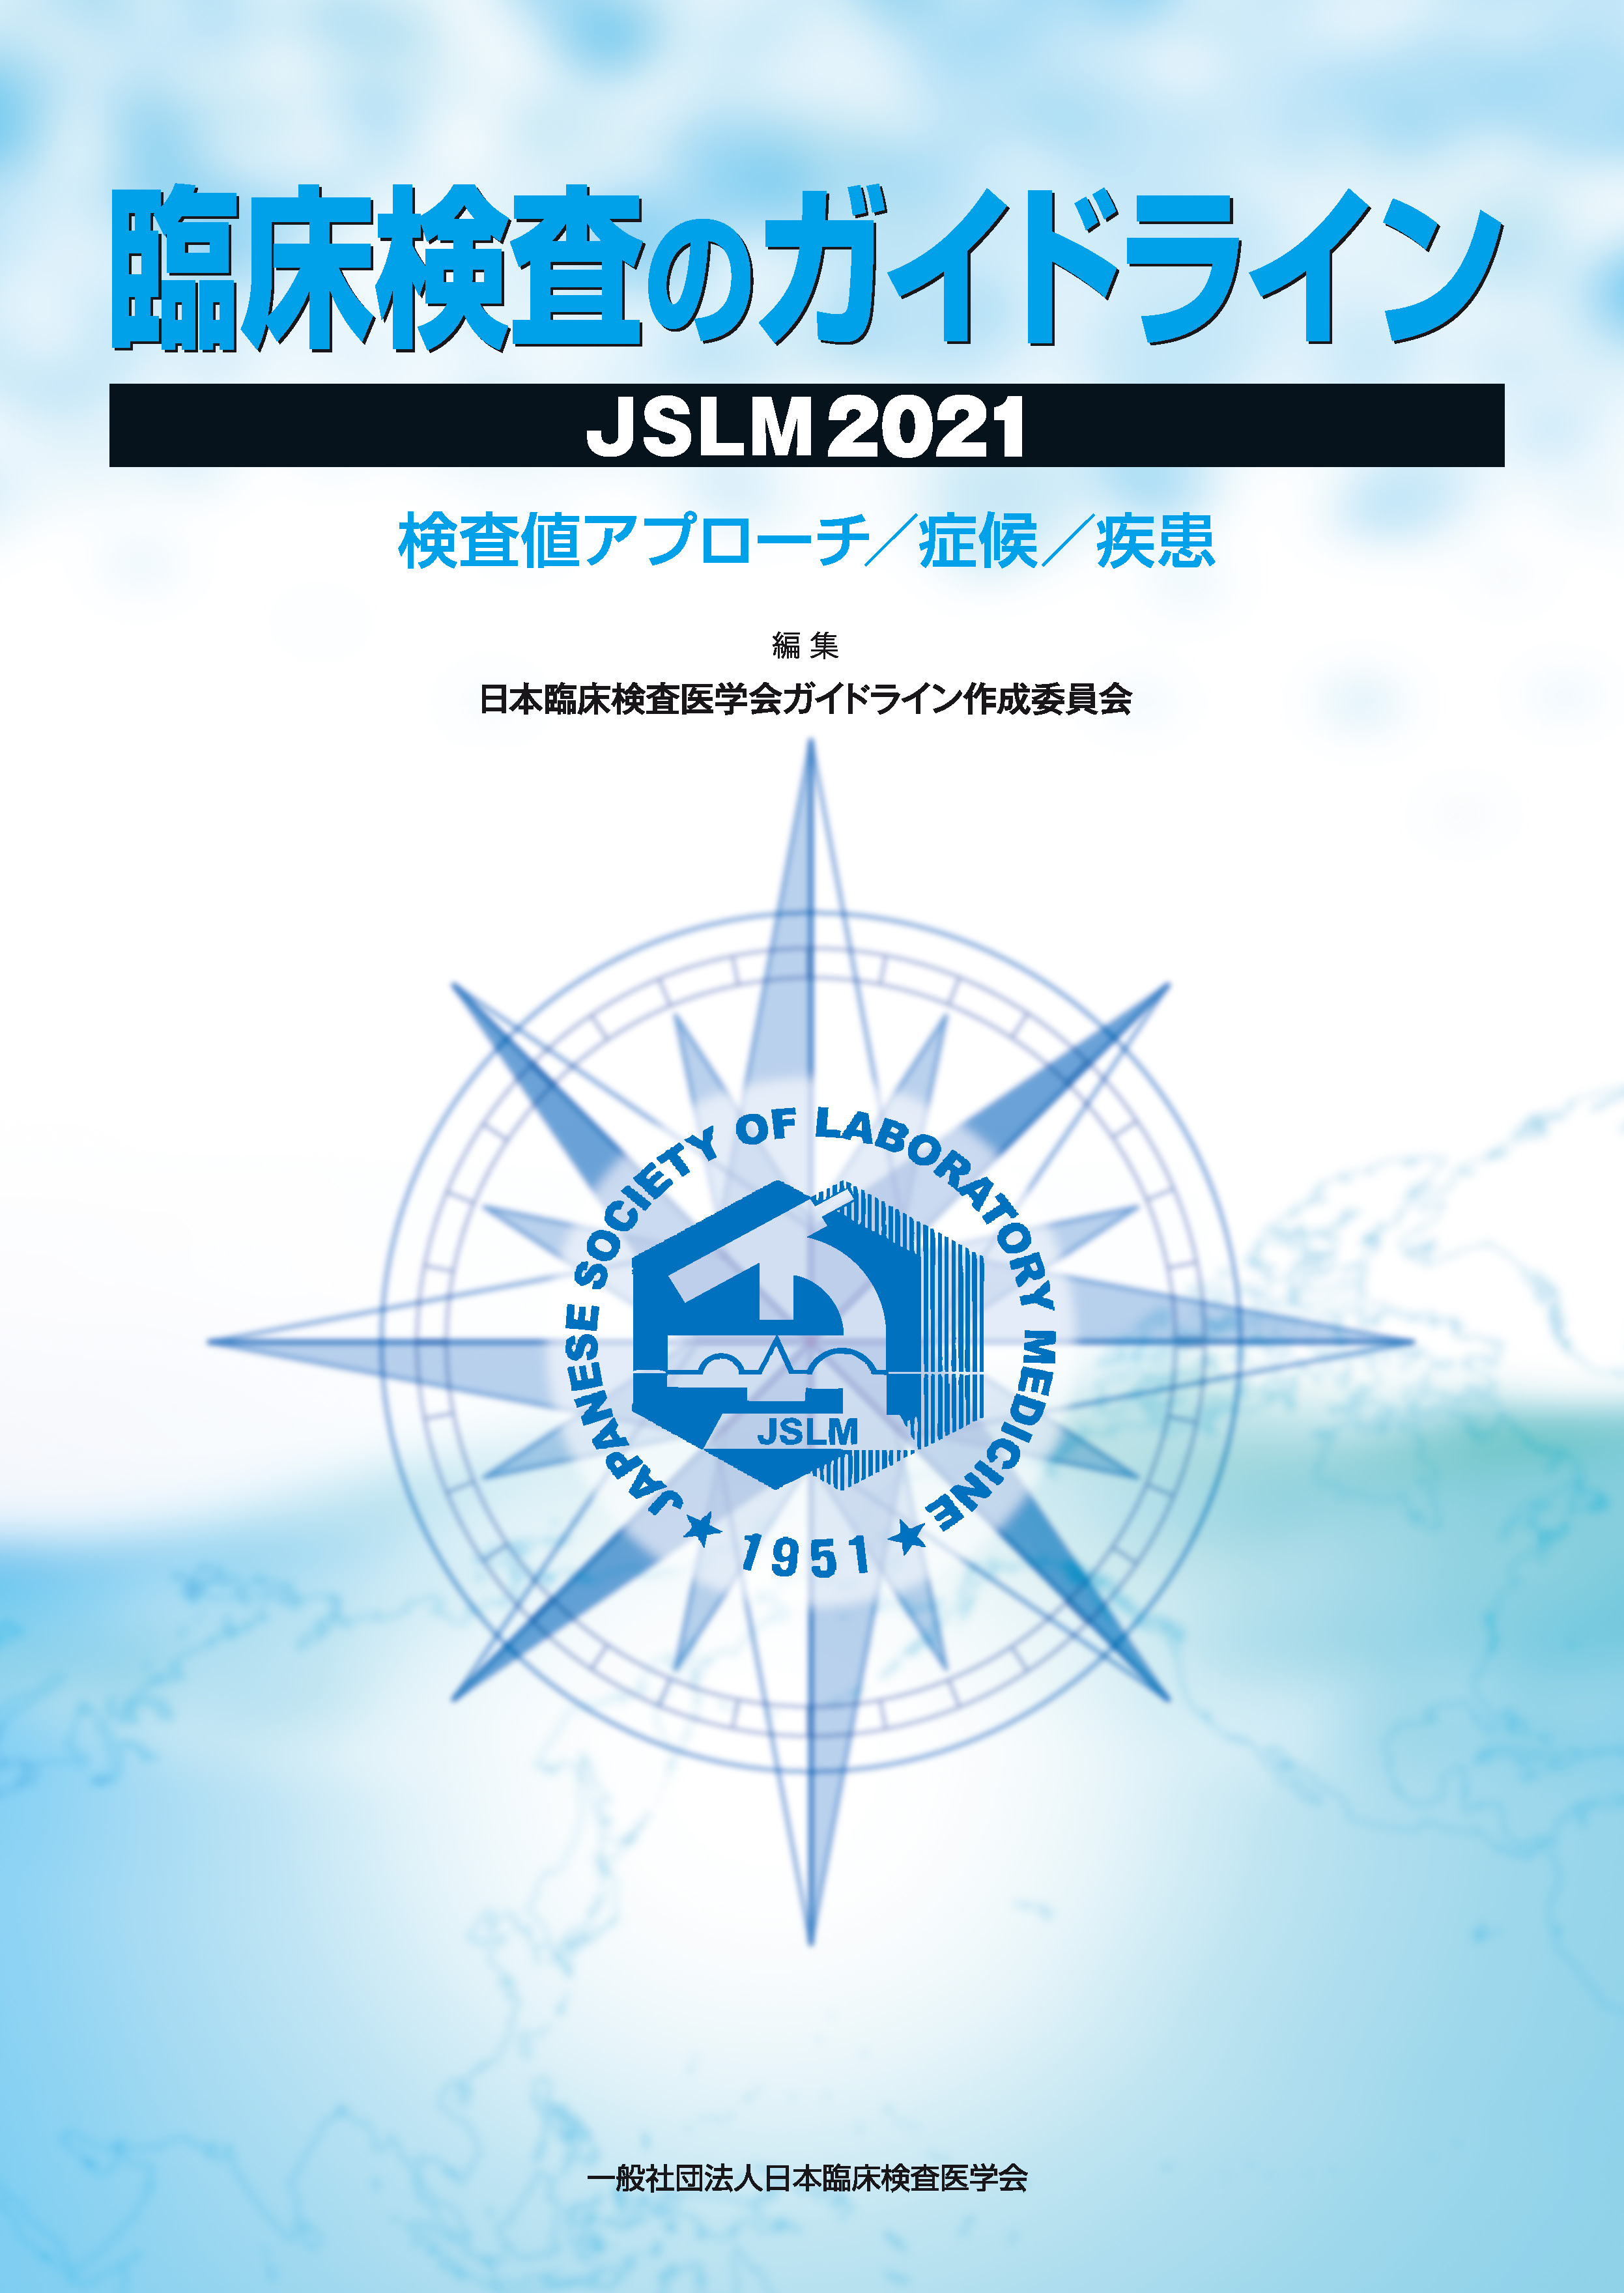 JSLM2021